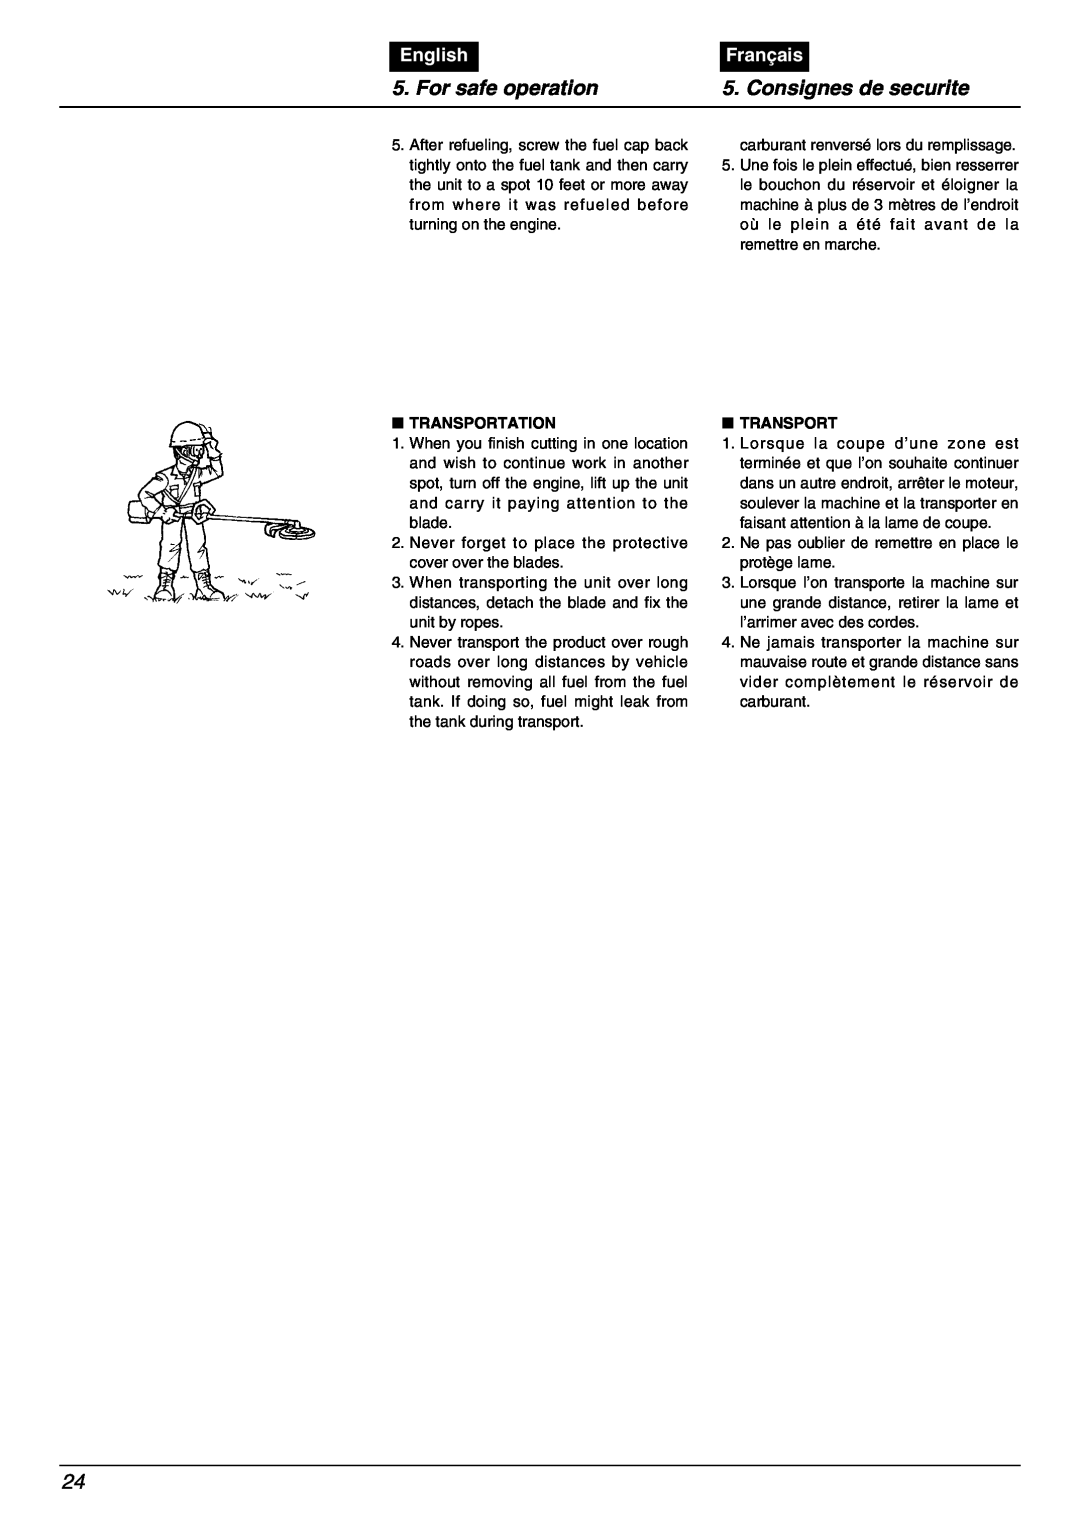 Zenoah BC2000 manual For safe operation, Consignes de securite, English, Français, Transportation 